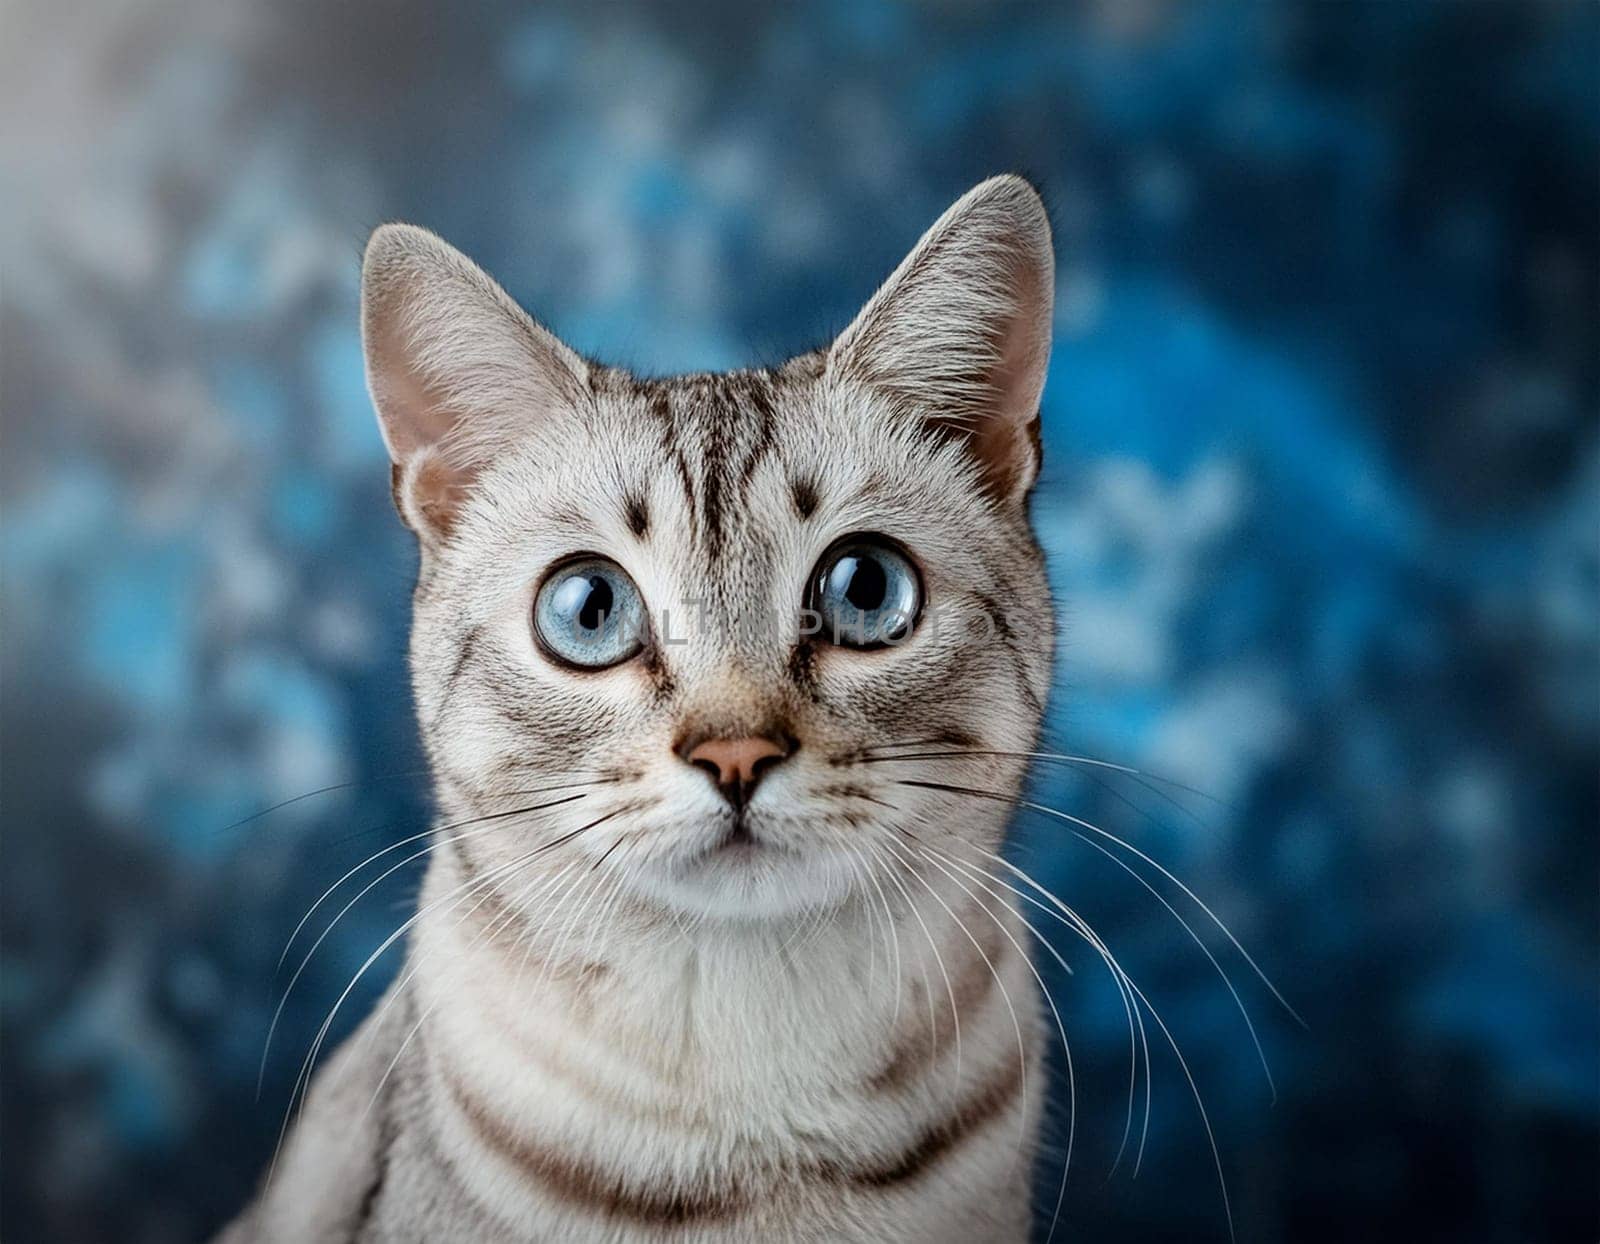 Close up cat portrait landscape format. by JFsPic